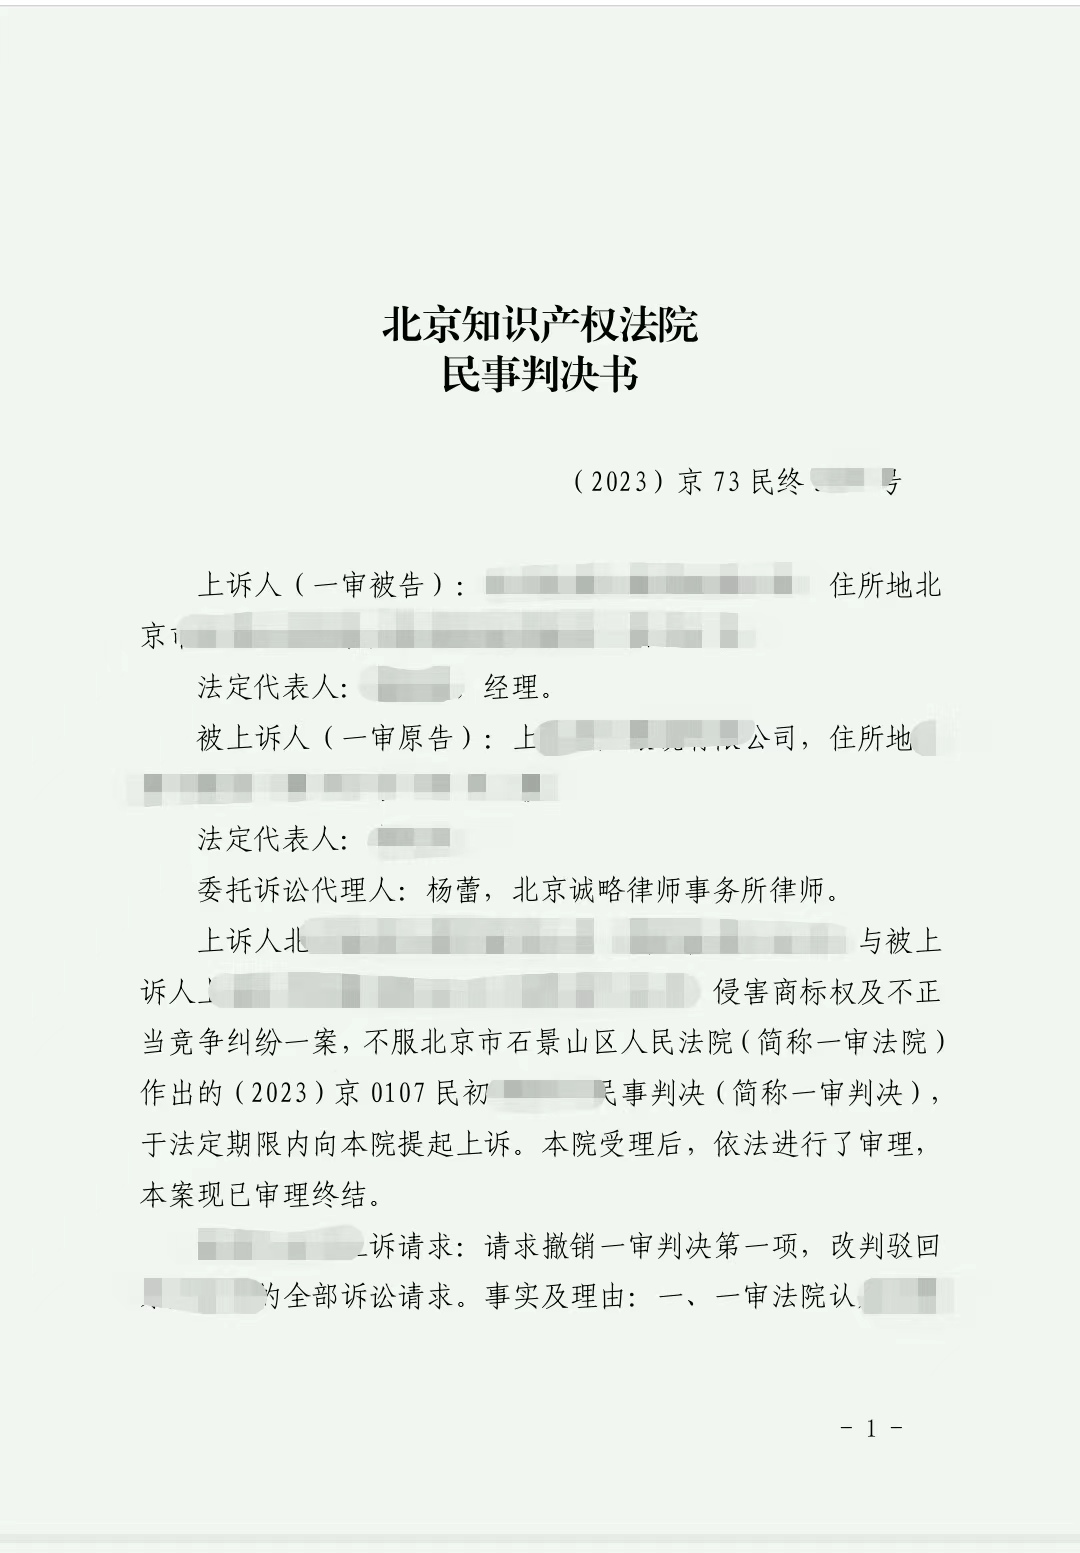 【北京市】上海某公司与北京某公司侵害商标权及不正当竞争纠纷上诉一案